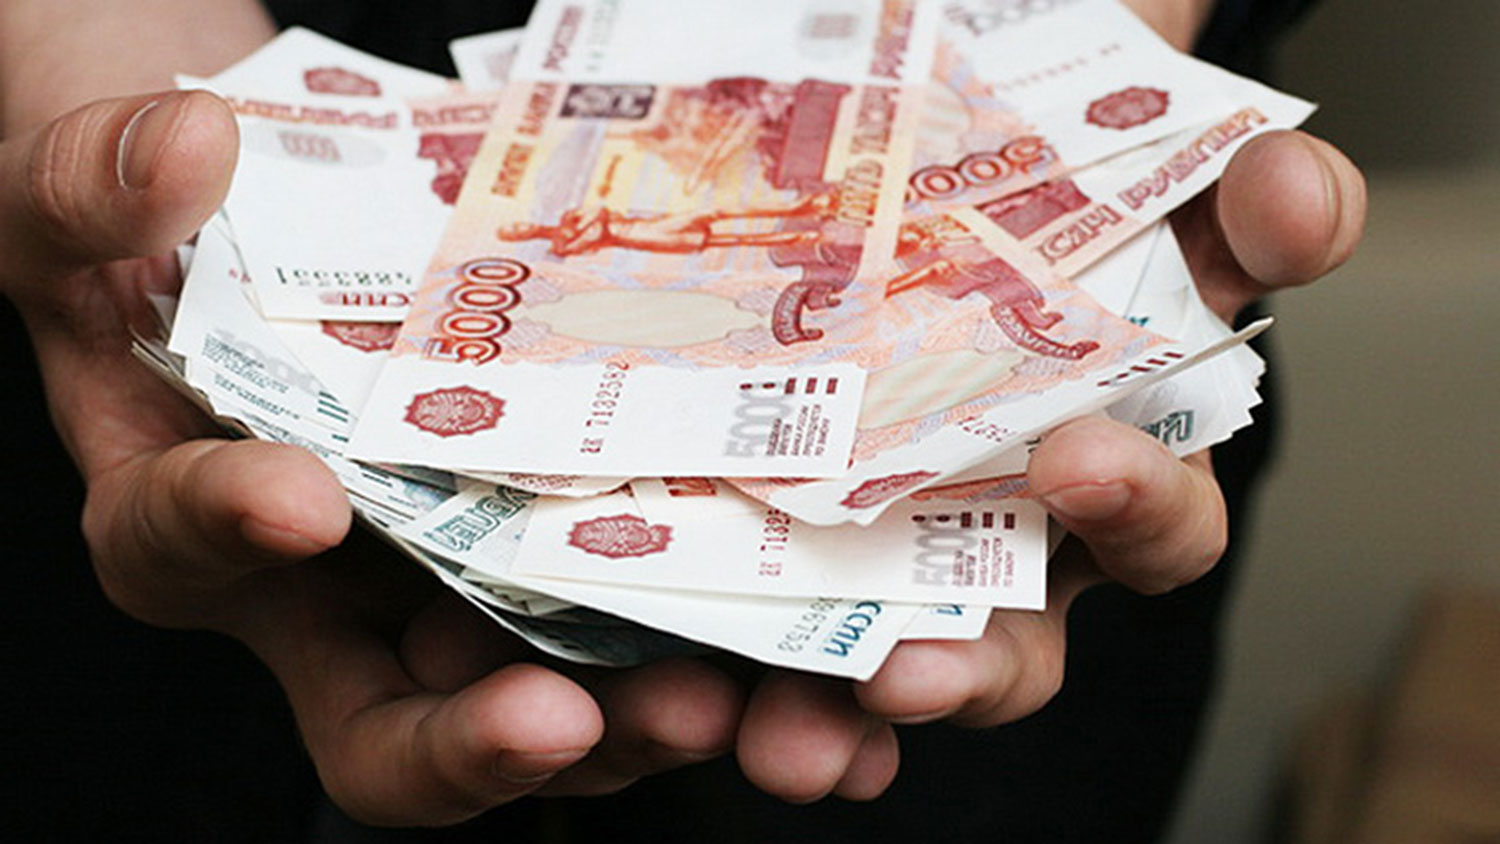 Долг 10 миллионов рублей. Деньги в руках. Дает деньги. Фотография денег в руках. Деньги в женских руках.